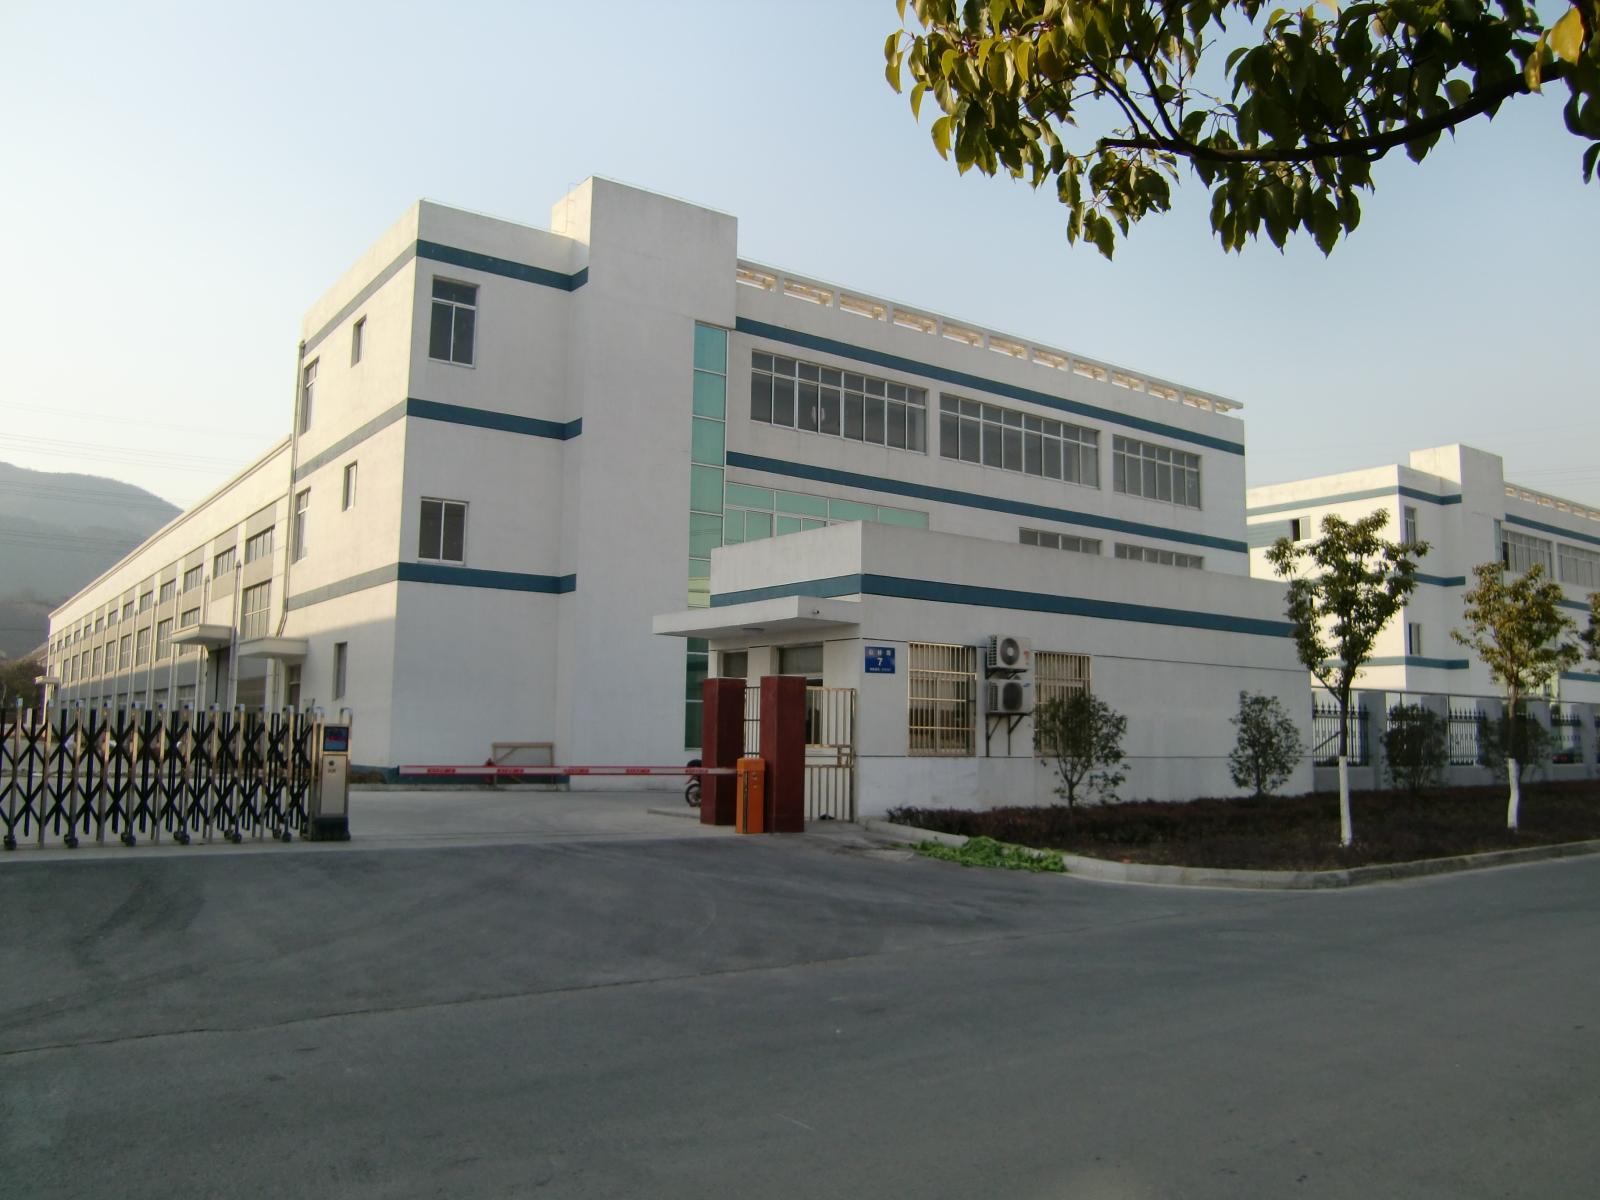 Hayashi Seiko Co. Ltd. 